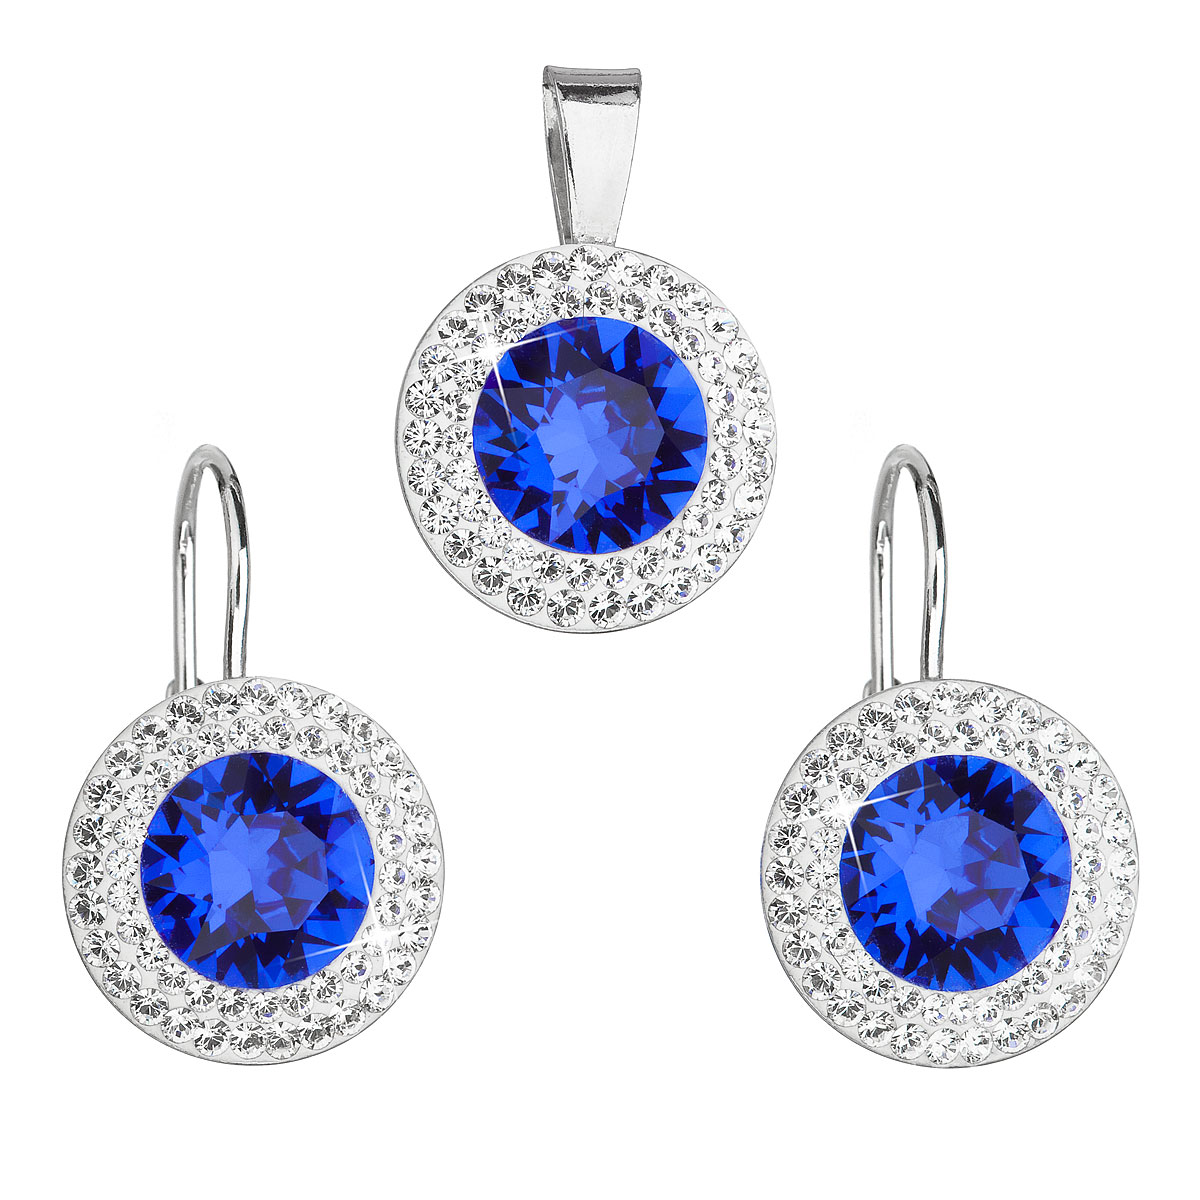 Evolution Group Sada šperků s krystaly Swarovski náušnice a přívěsek modré kulaté 39107.3 majestic blue